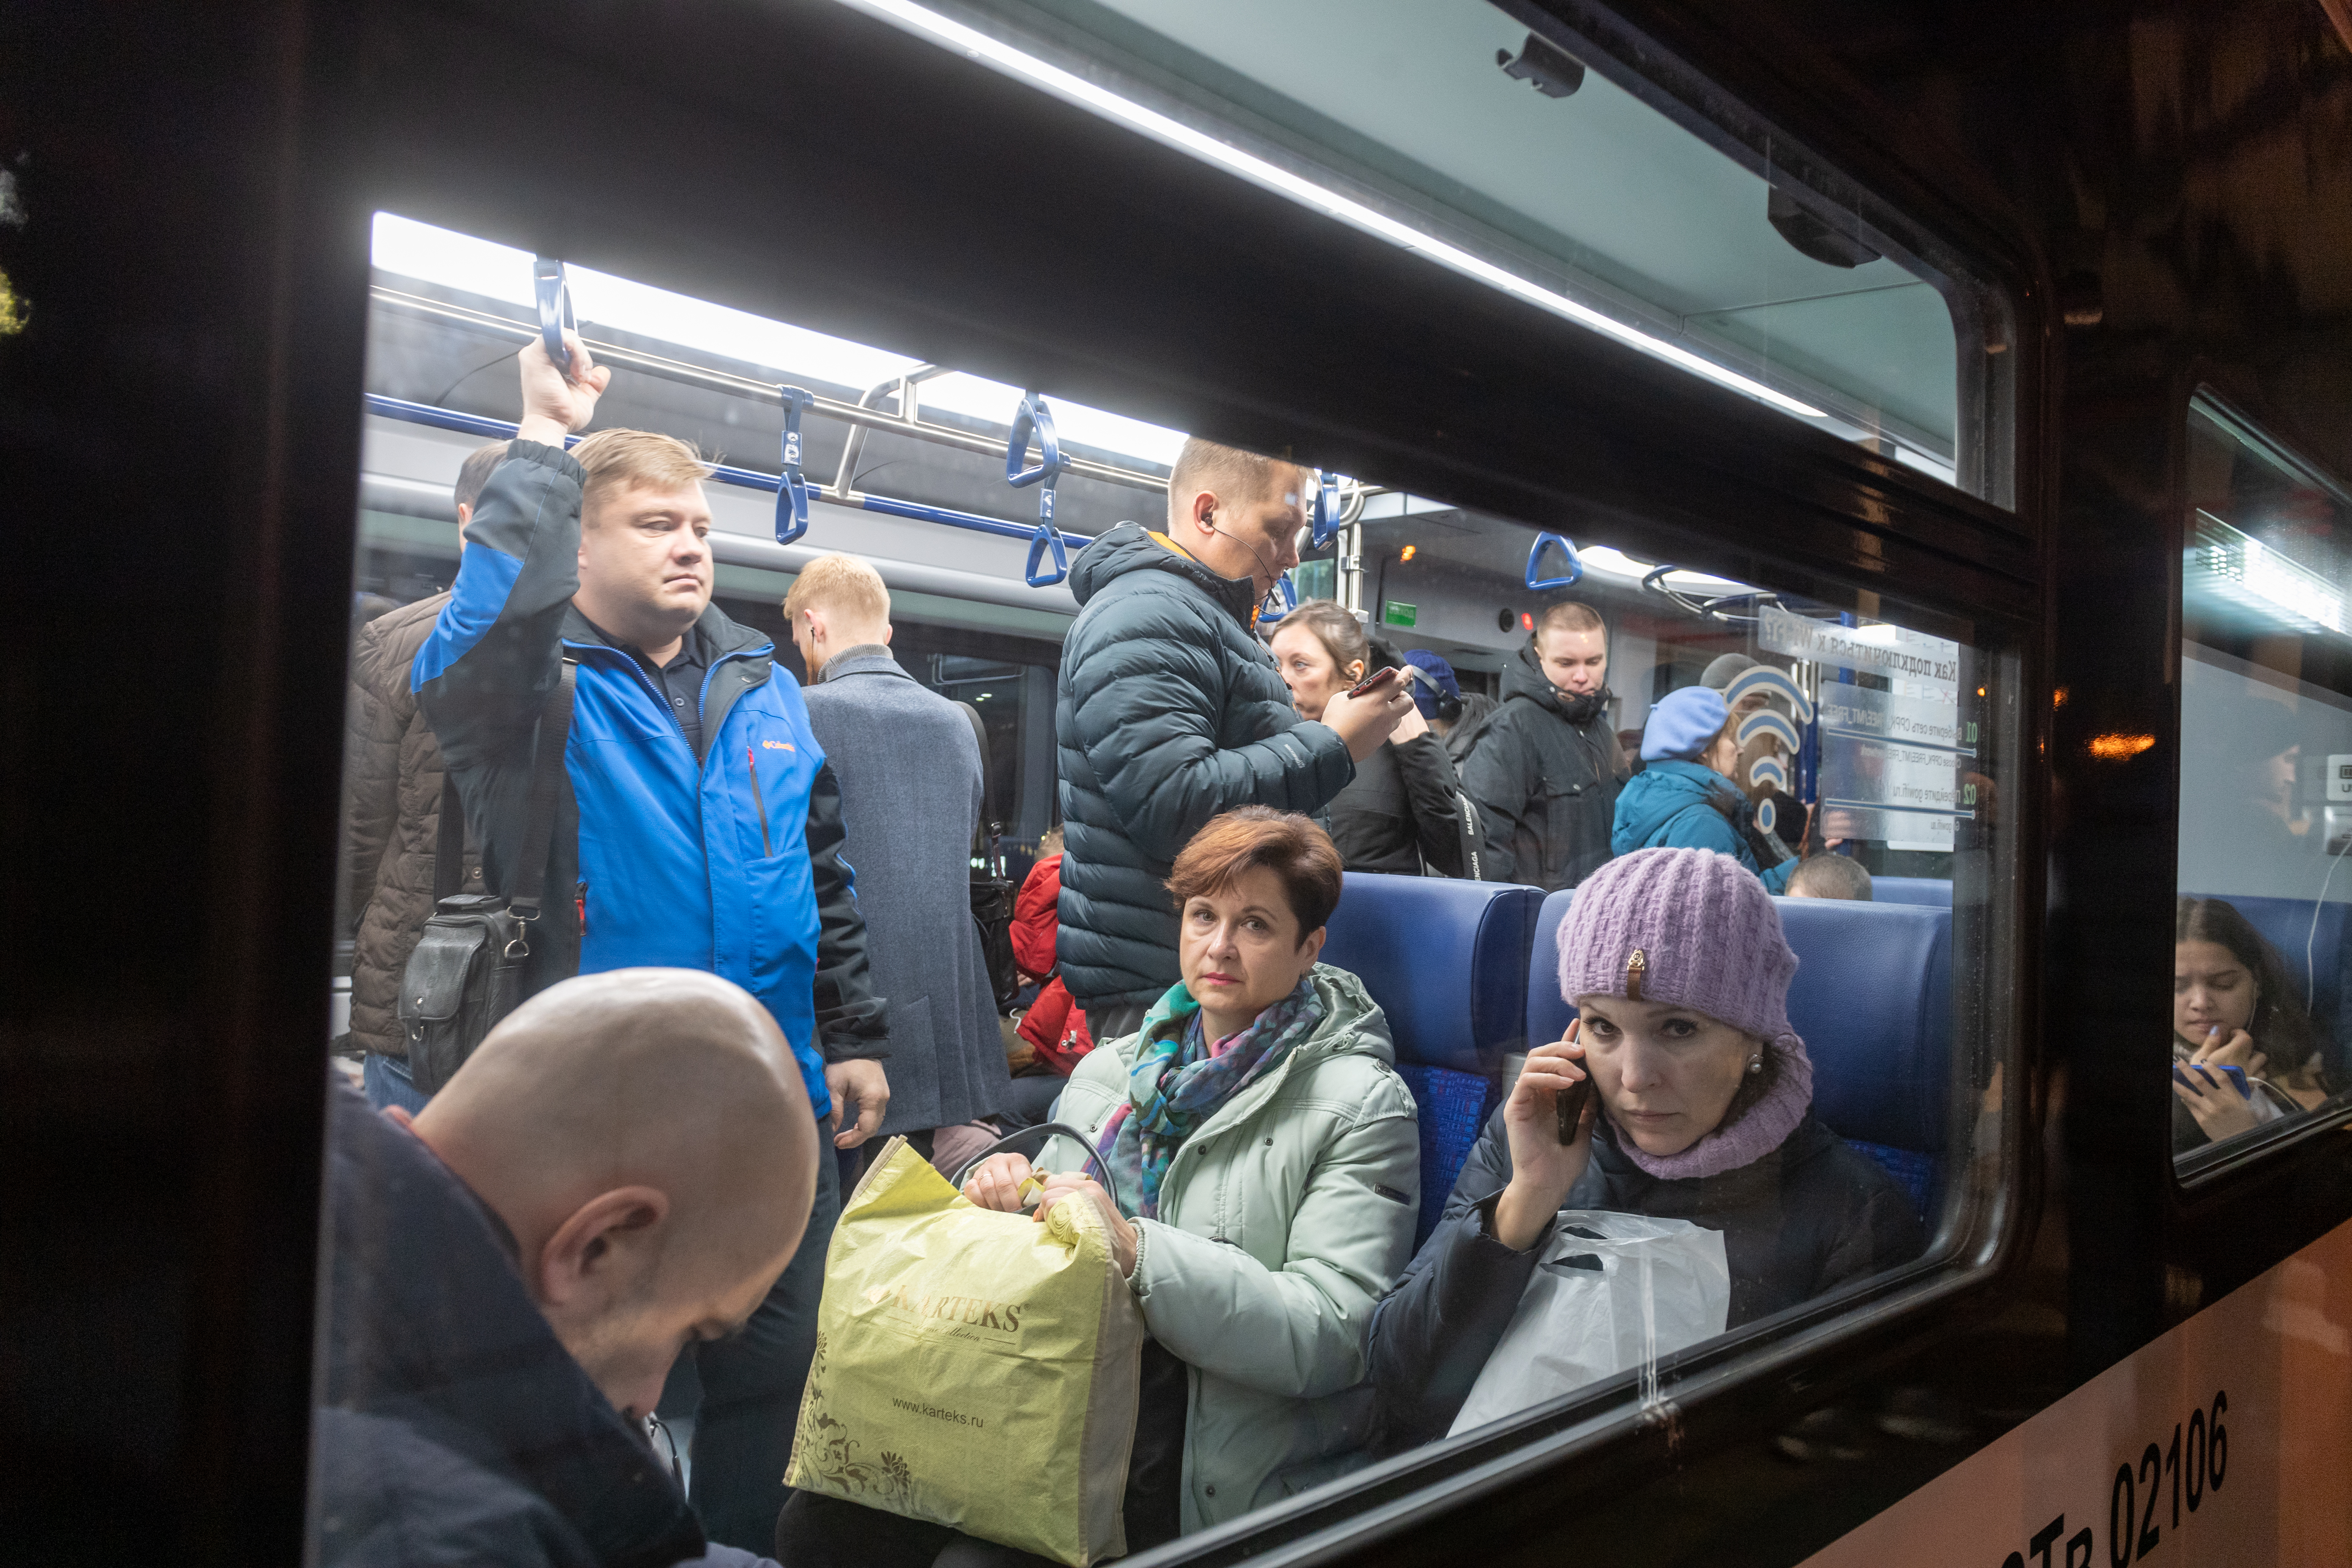 Удалять нарушителей спокойствия из вагонов ведомство планирует поручить правоохранителям Фото: © Global Look Press / Komsomolskaya Pravda